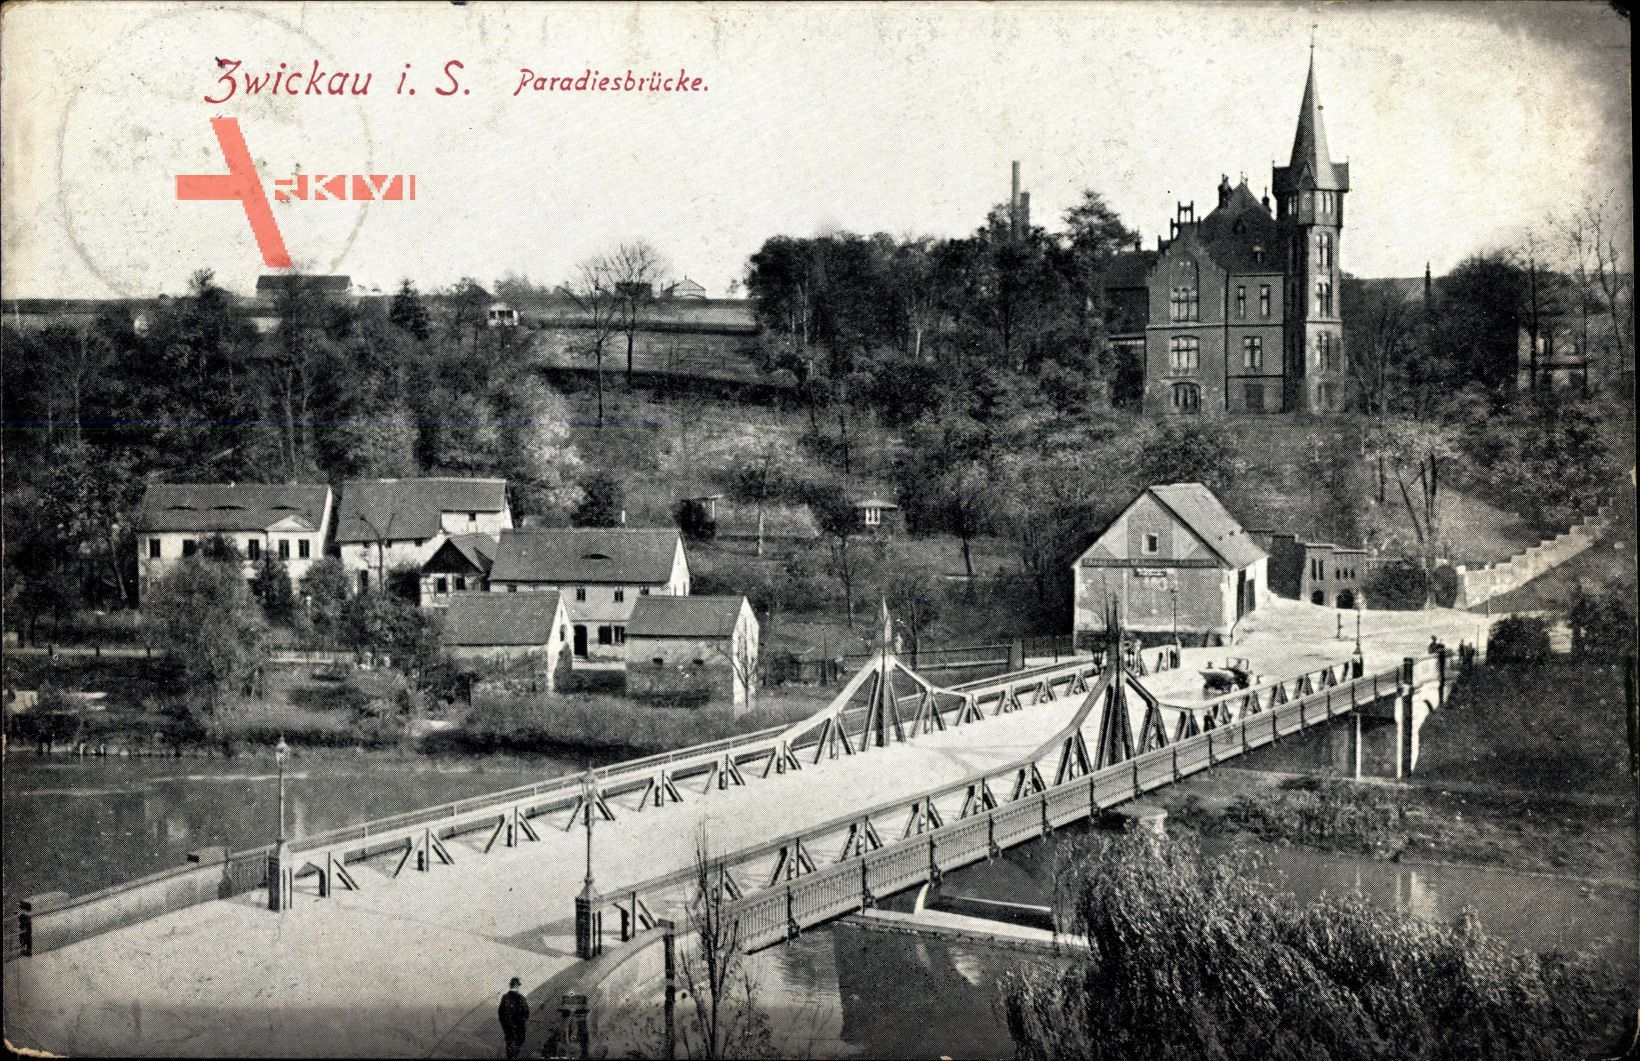 Zwickau in Sachsen, Blick auf die Paradiesbrücke, Wohnhäuser